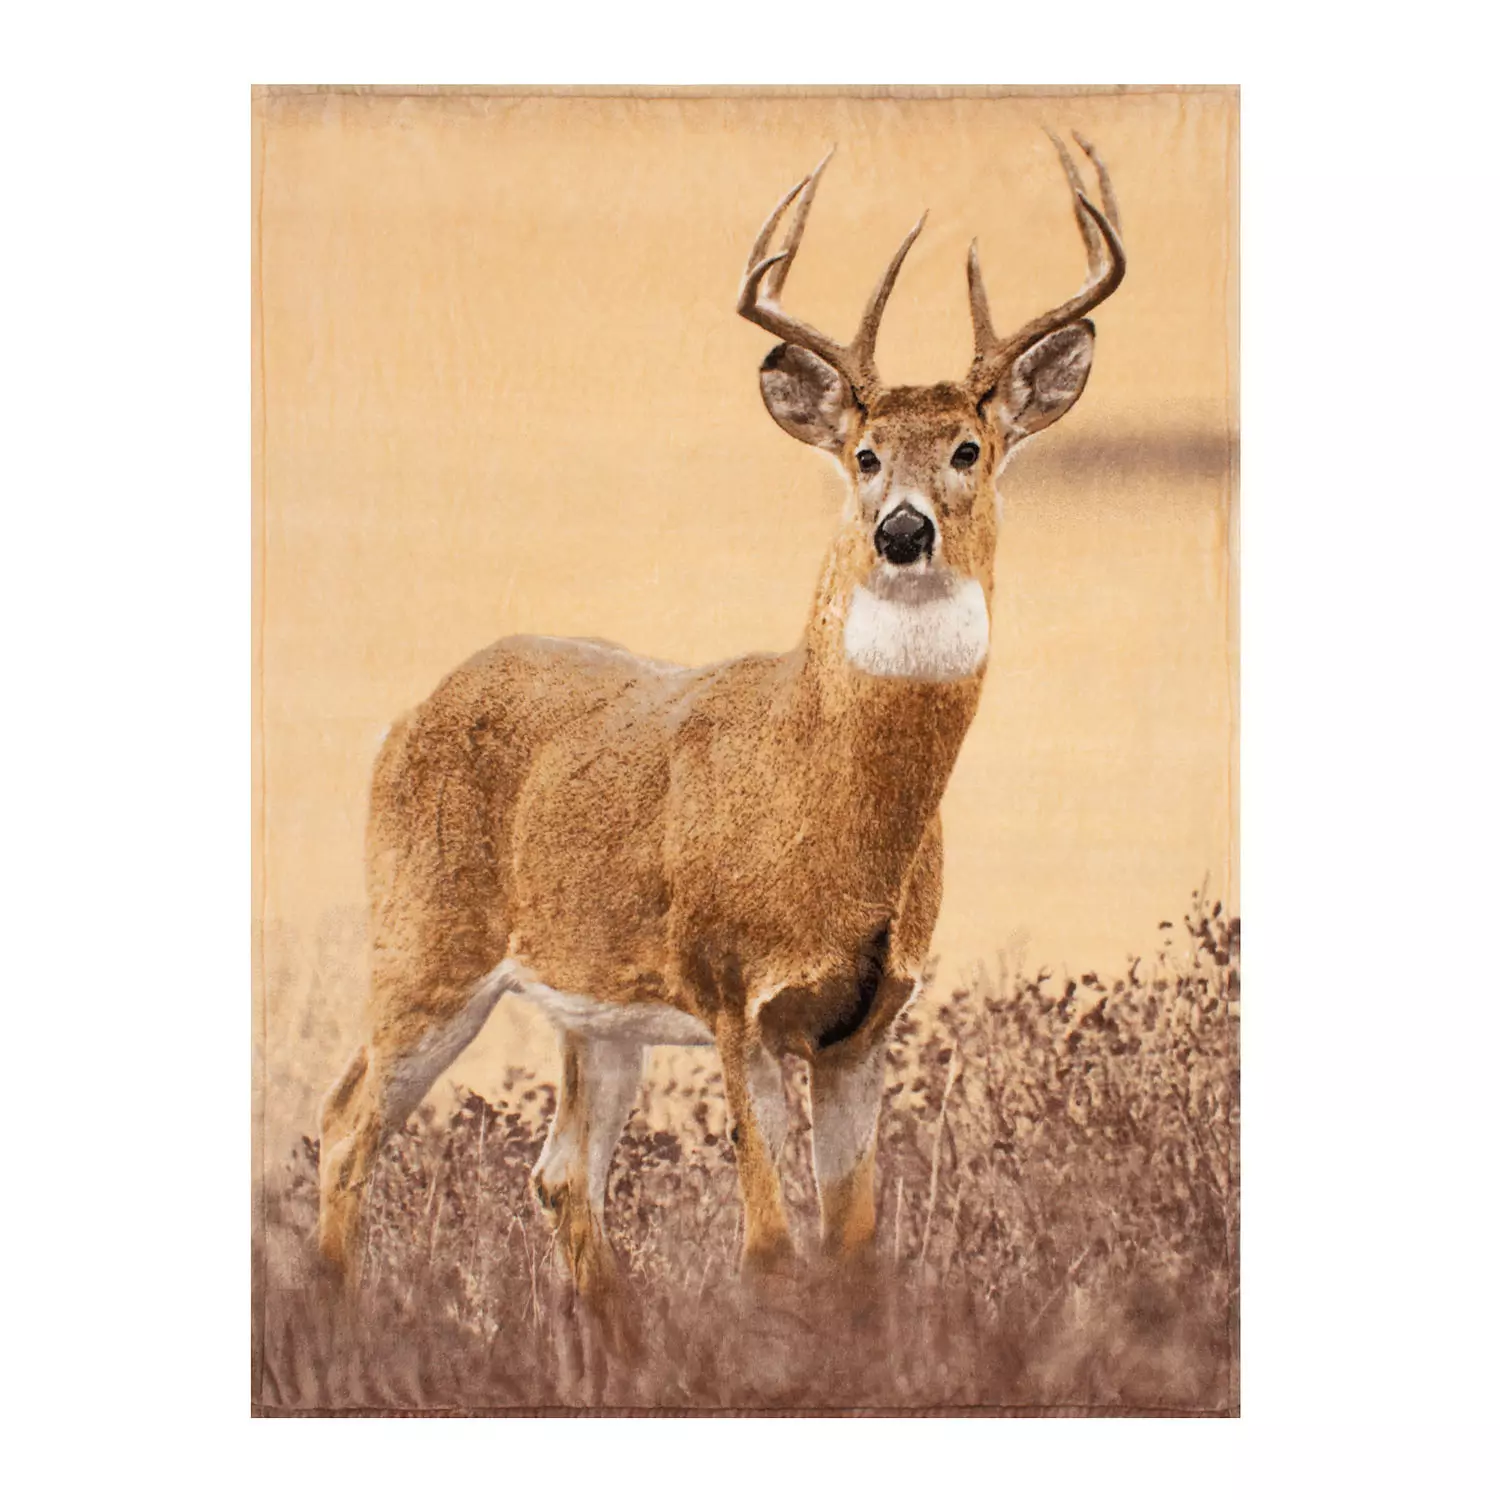 Printed micro mink throw, 48"x60", deer